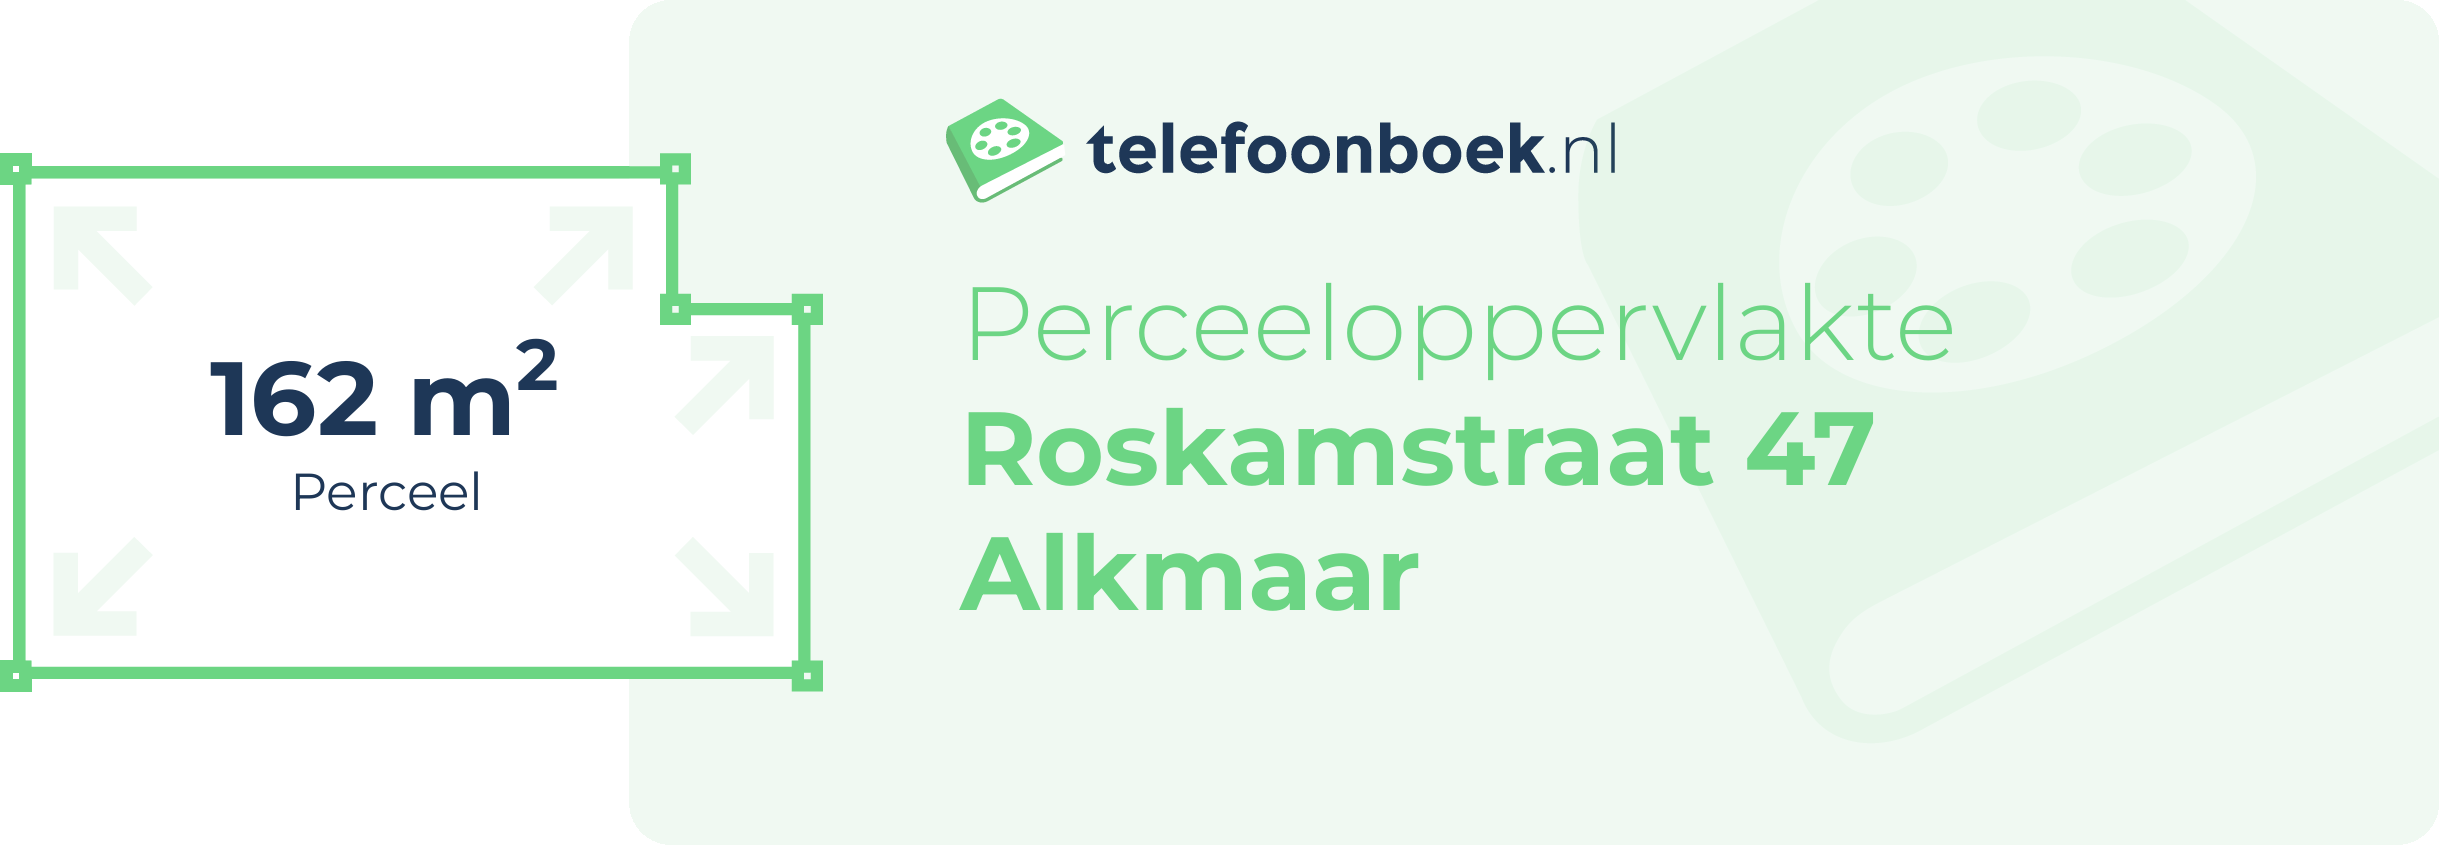 Perceeloppervlakte Roskamstraat 47 Alkmaar